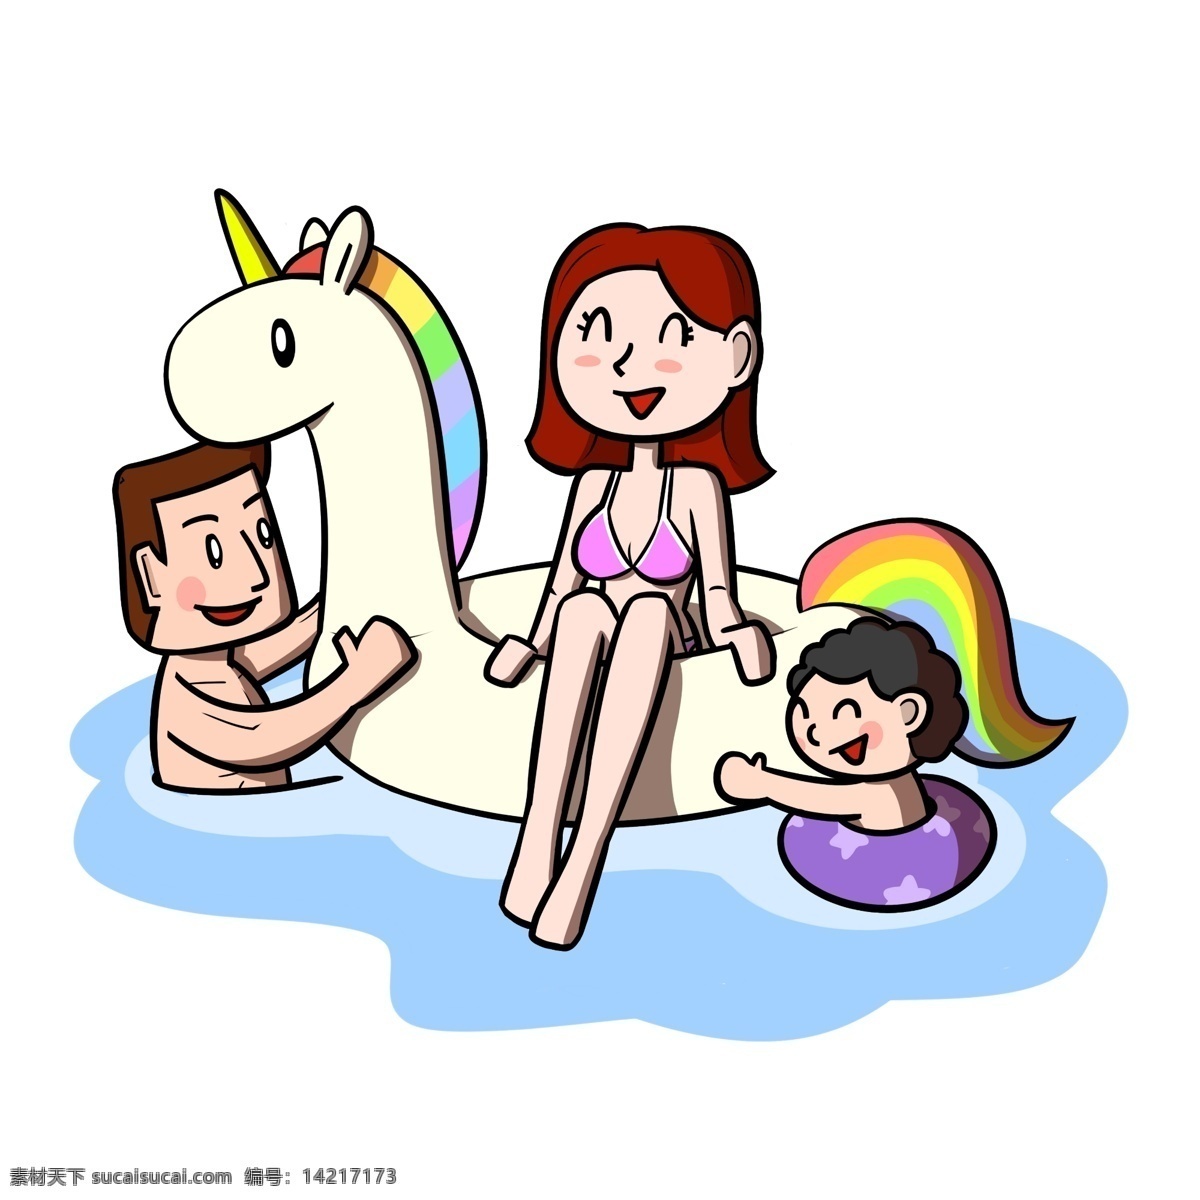 卡通 全家人 游泳 嬉戏 透明 底 夏季 夏天 卡通家人 儿童 玩耍 海边 海边人物 夏季人物 夏天人物 卡通人物 卡通夏季